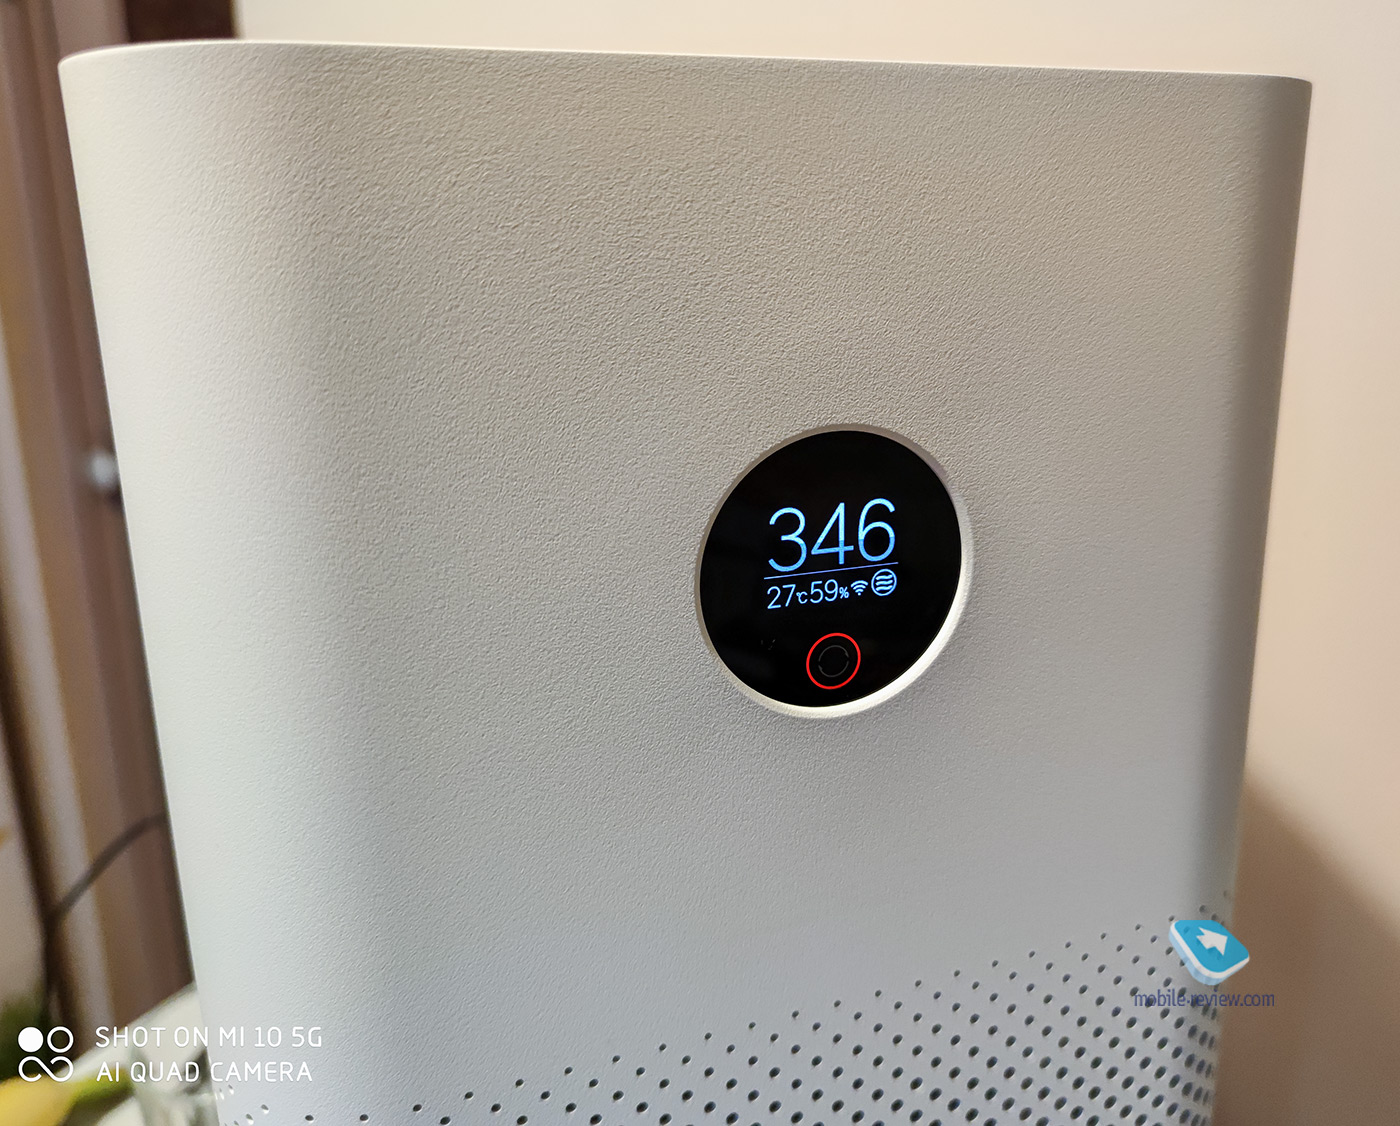 Xiaomi Mi Air Purifier 3H: clean air for every home!